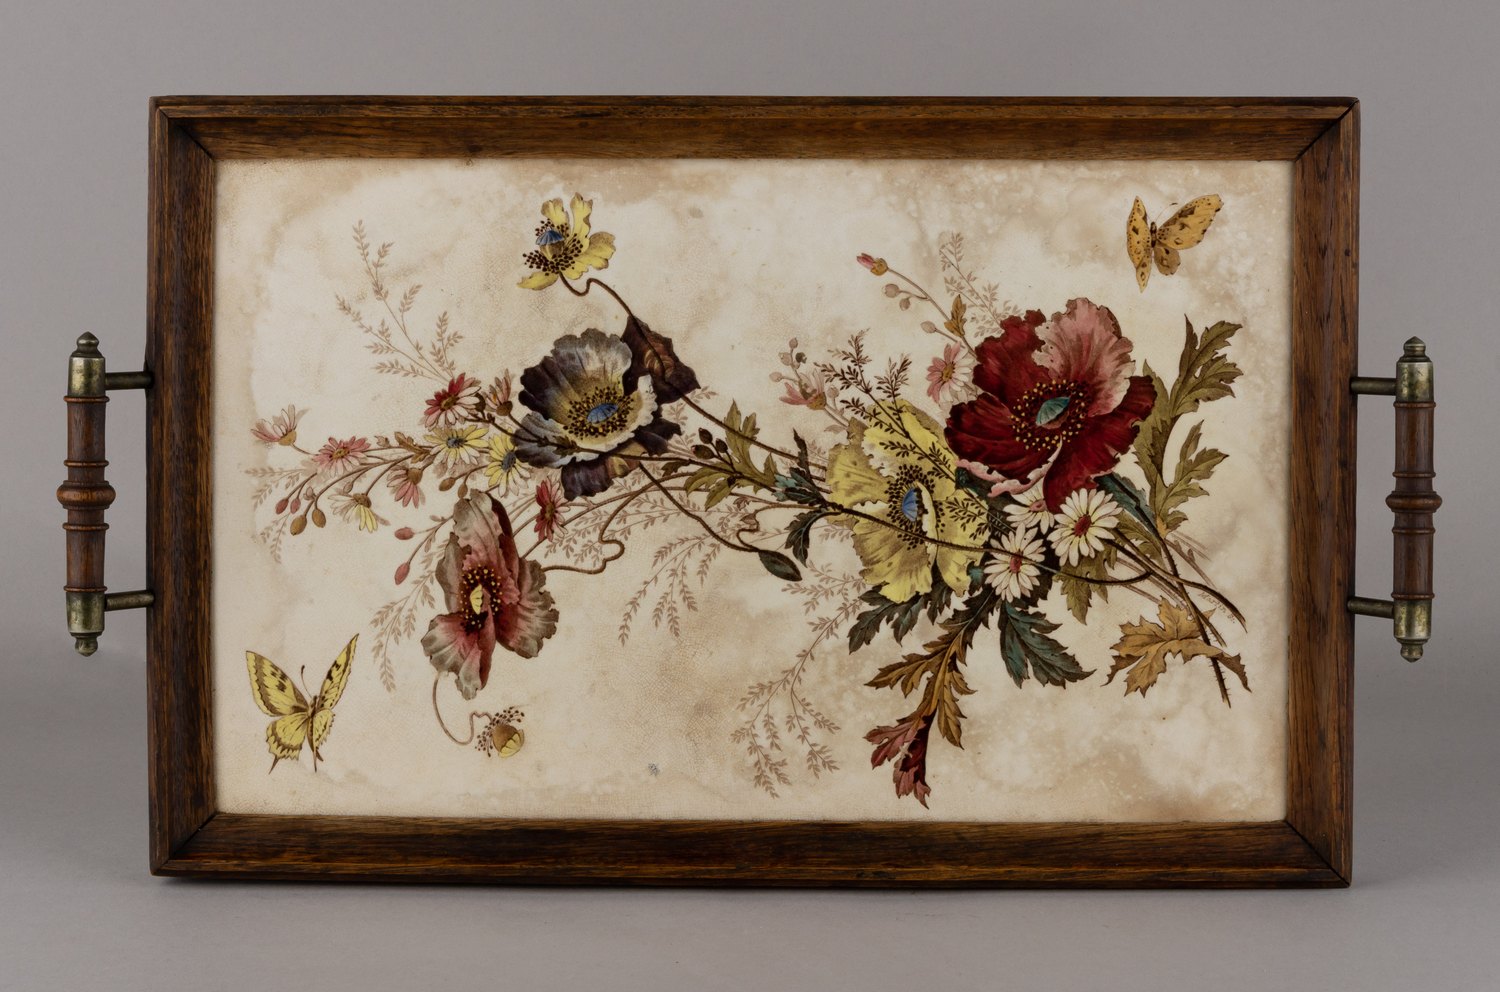 (Villeroy&Boch) Поднос  с изображением  бабочек и цветов.<br>Германия,  фирма Villeroy&Boch,   по гравюре Джона Мартина (Martin Sc), 1874-1900 годы.